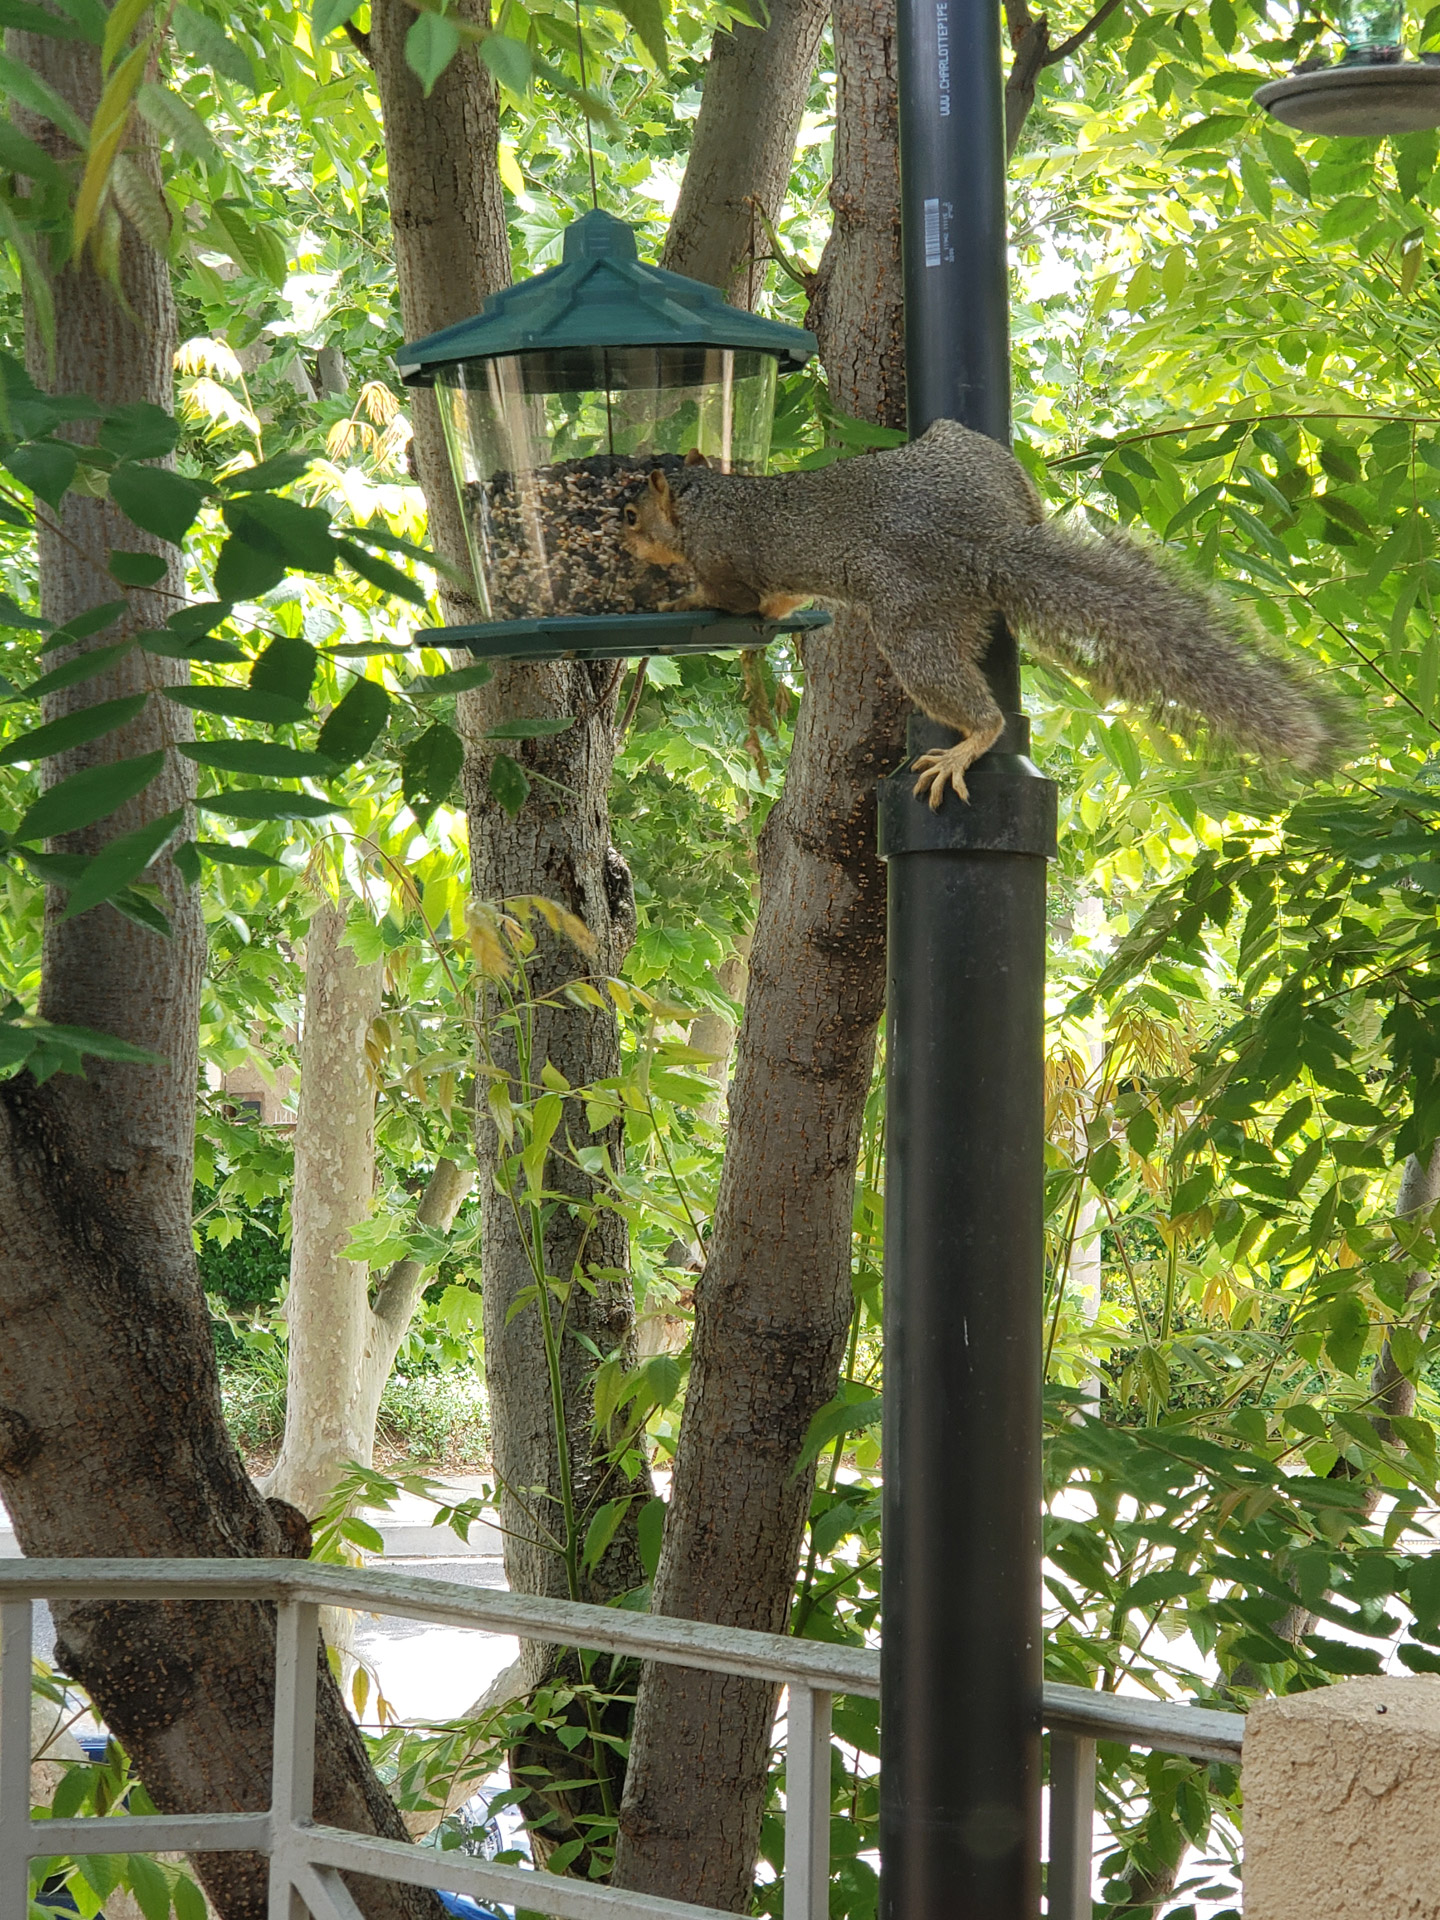 Squirrel Acrobatics